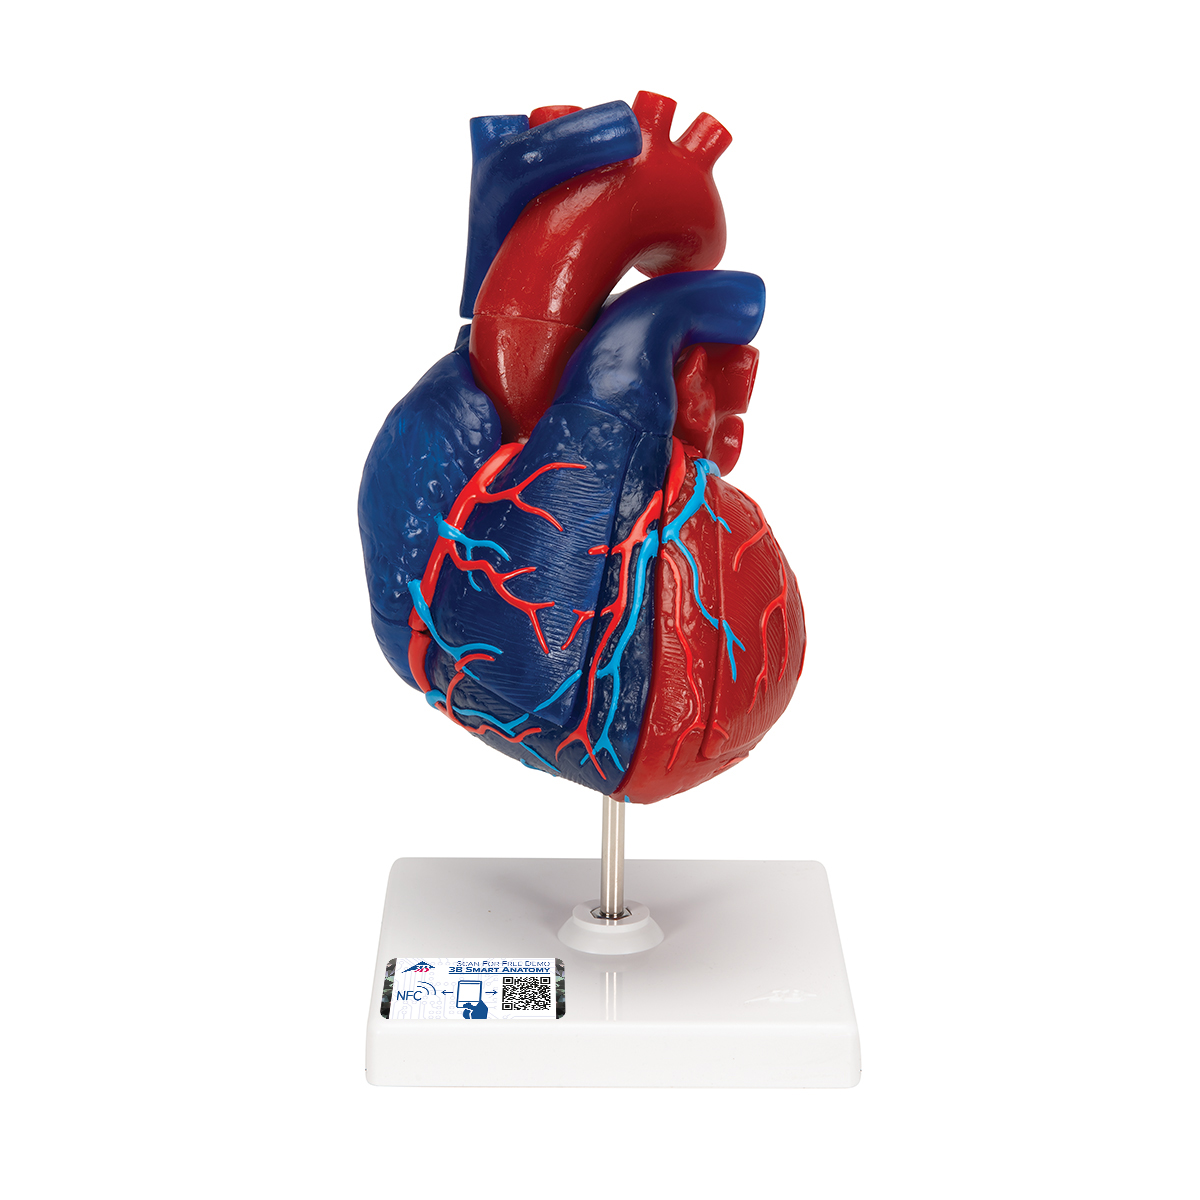 Herzmodell in Lebensgröße, didaktisch gefärbt, 5-teilig - 3B Smart Anatomy, Bestellnummer 1010007, G01/1, 3B Scientific